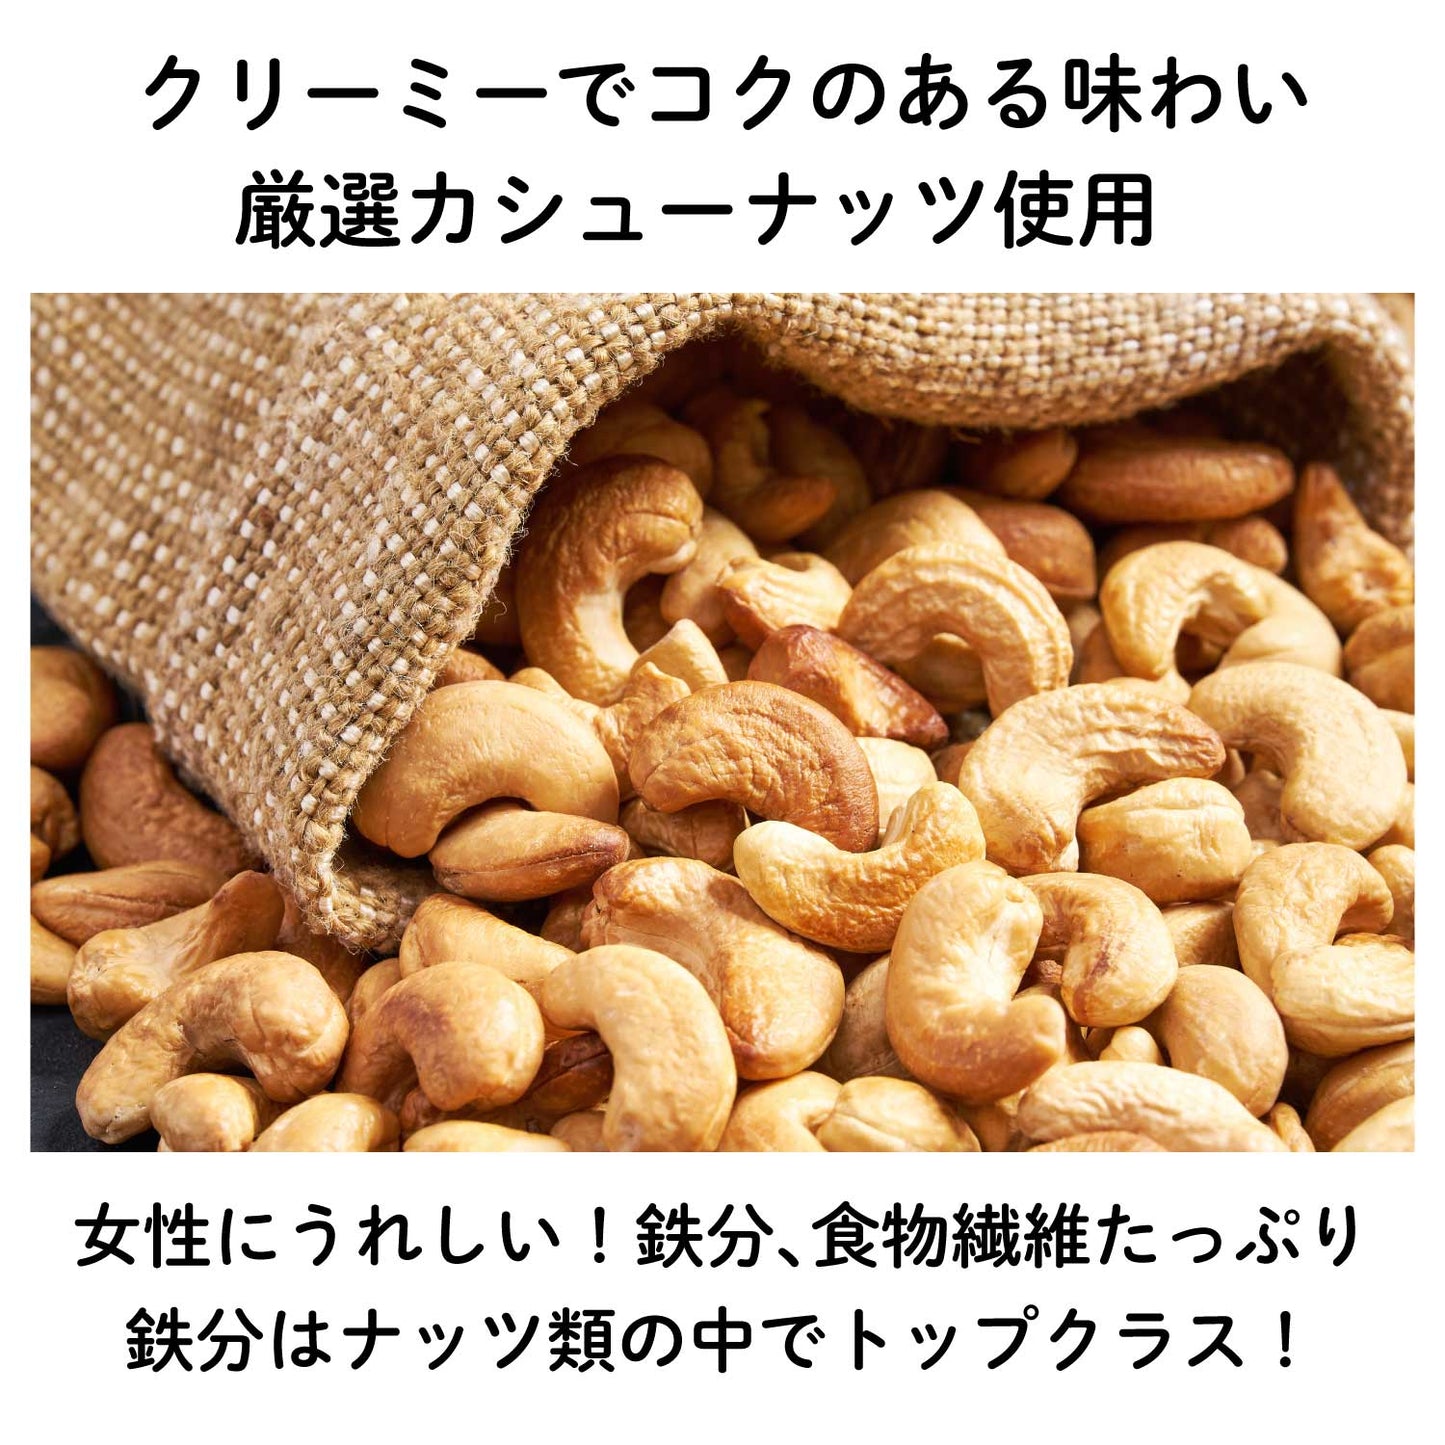 【公式サイト限定価格】"あまおう"いちごカシューナッツチョコレート